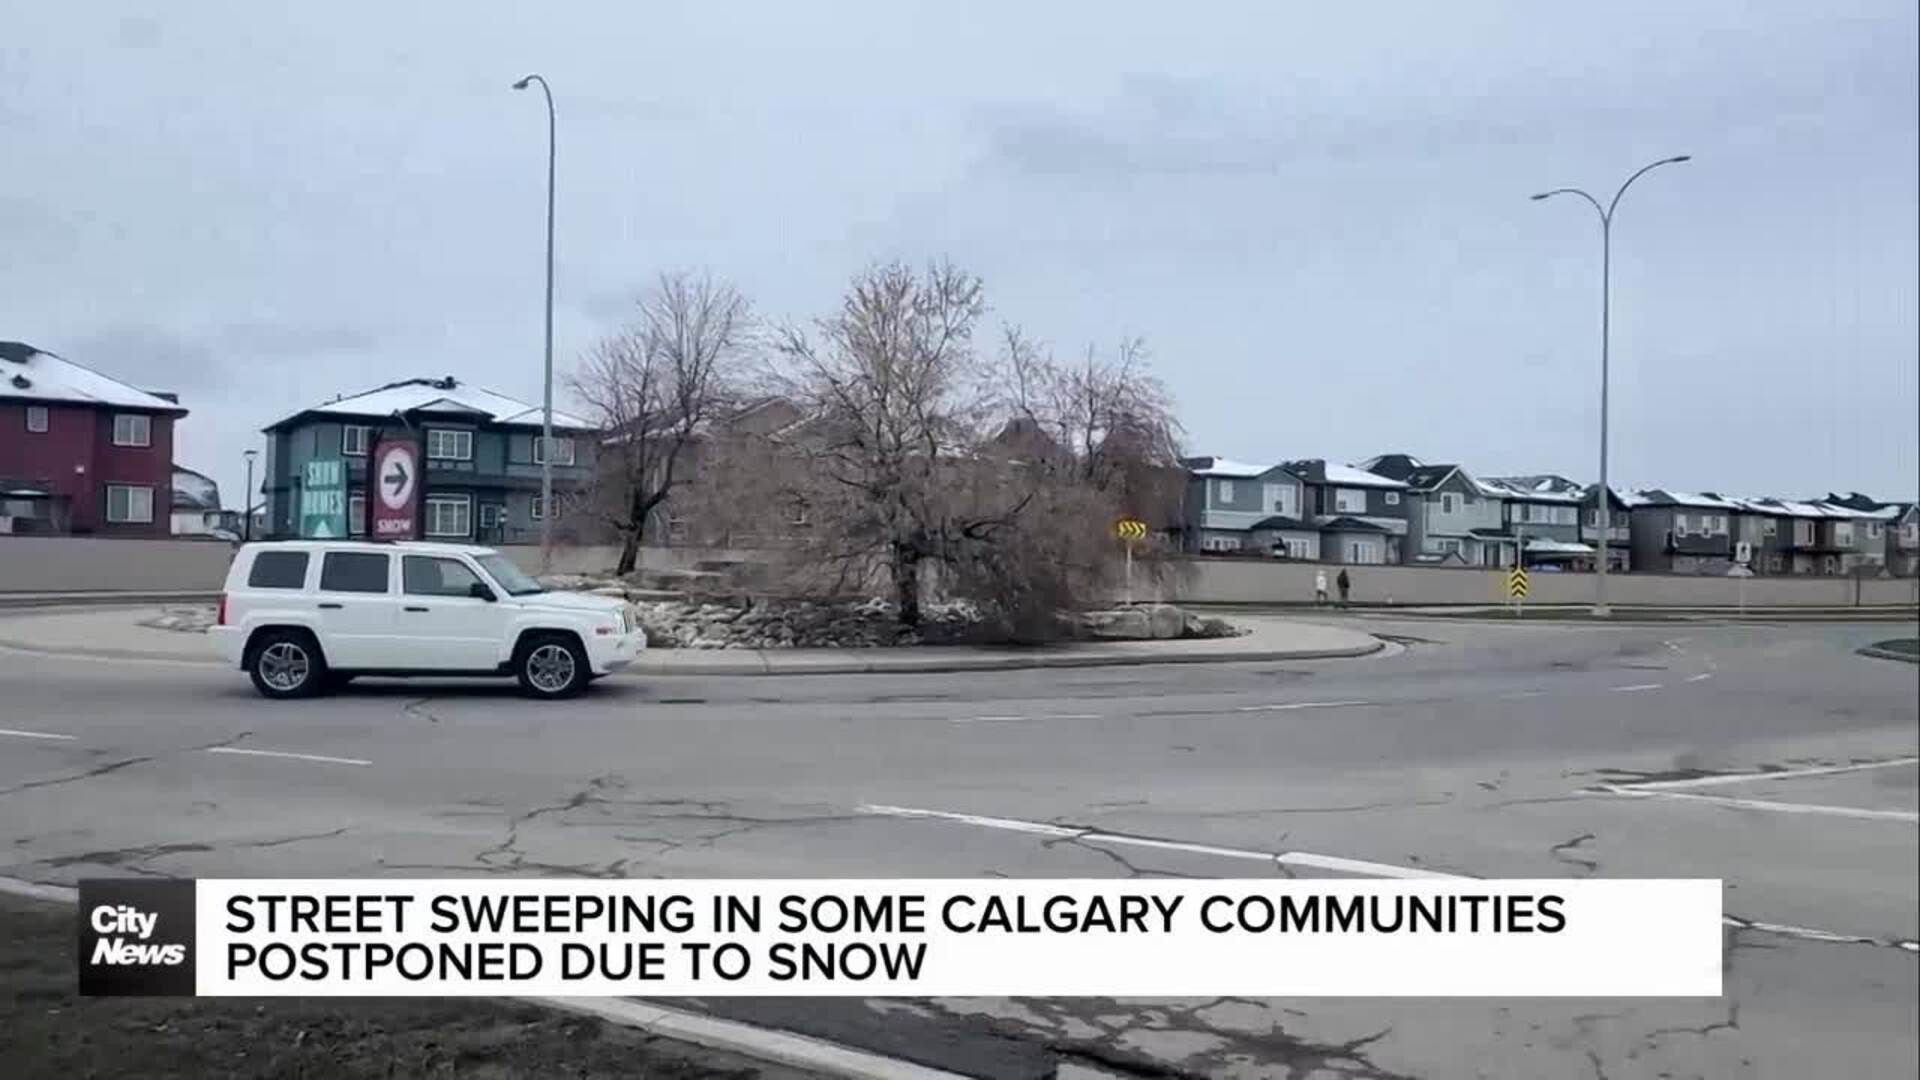 Street sweeping postponed in some Calgary communities